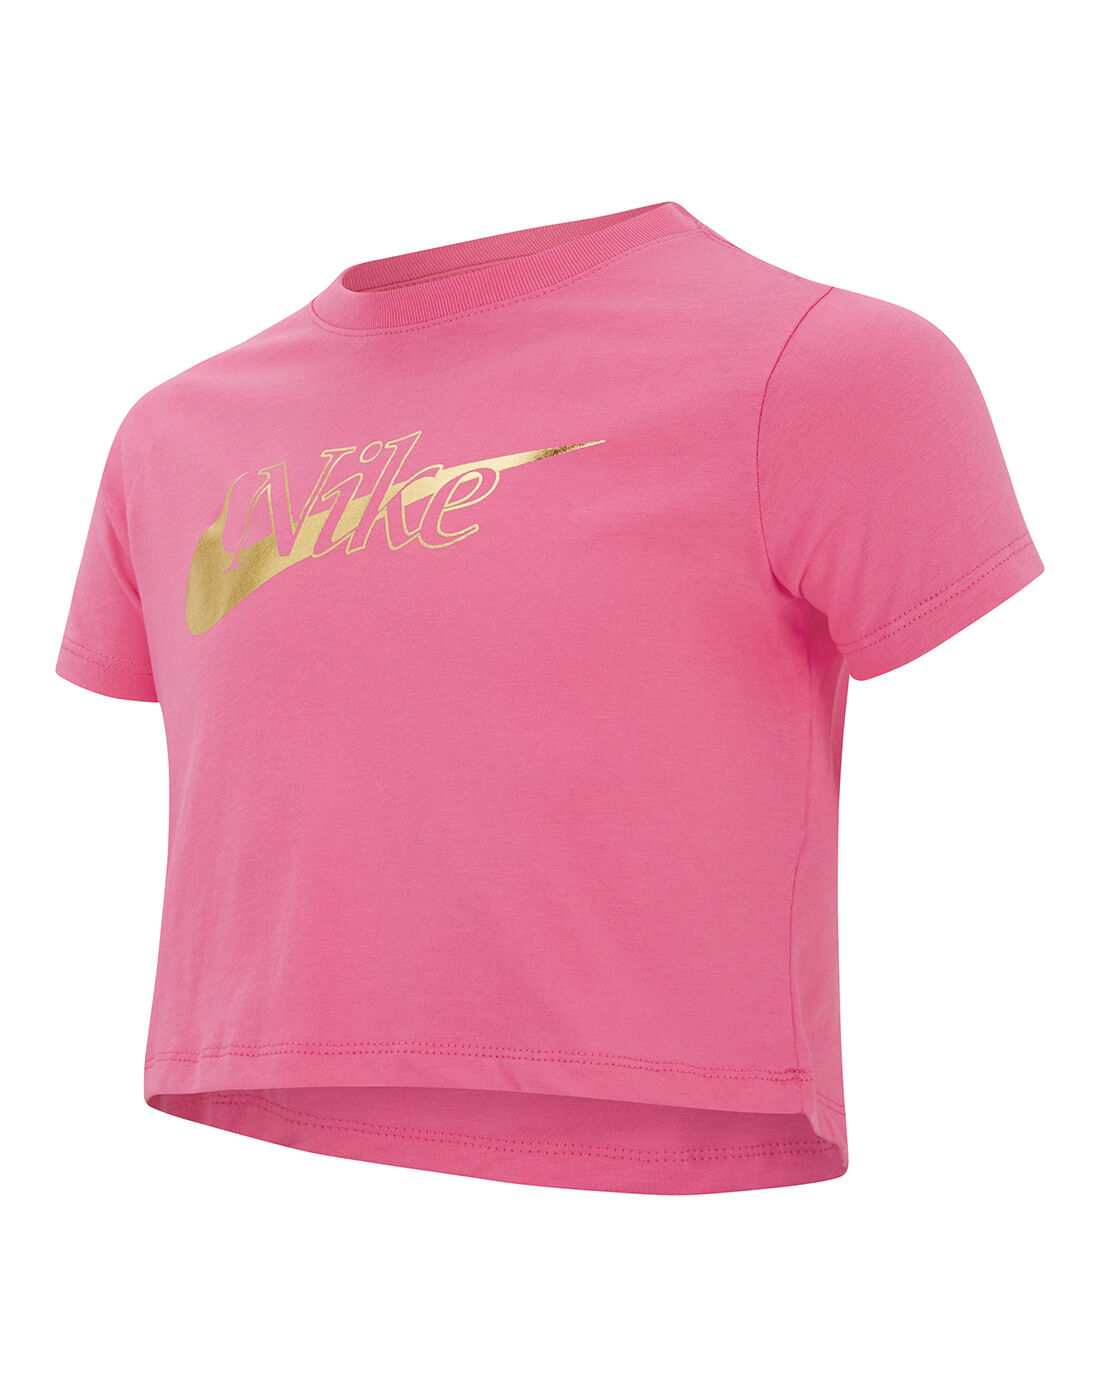 rose pink nike shirt